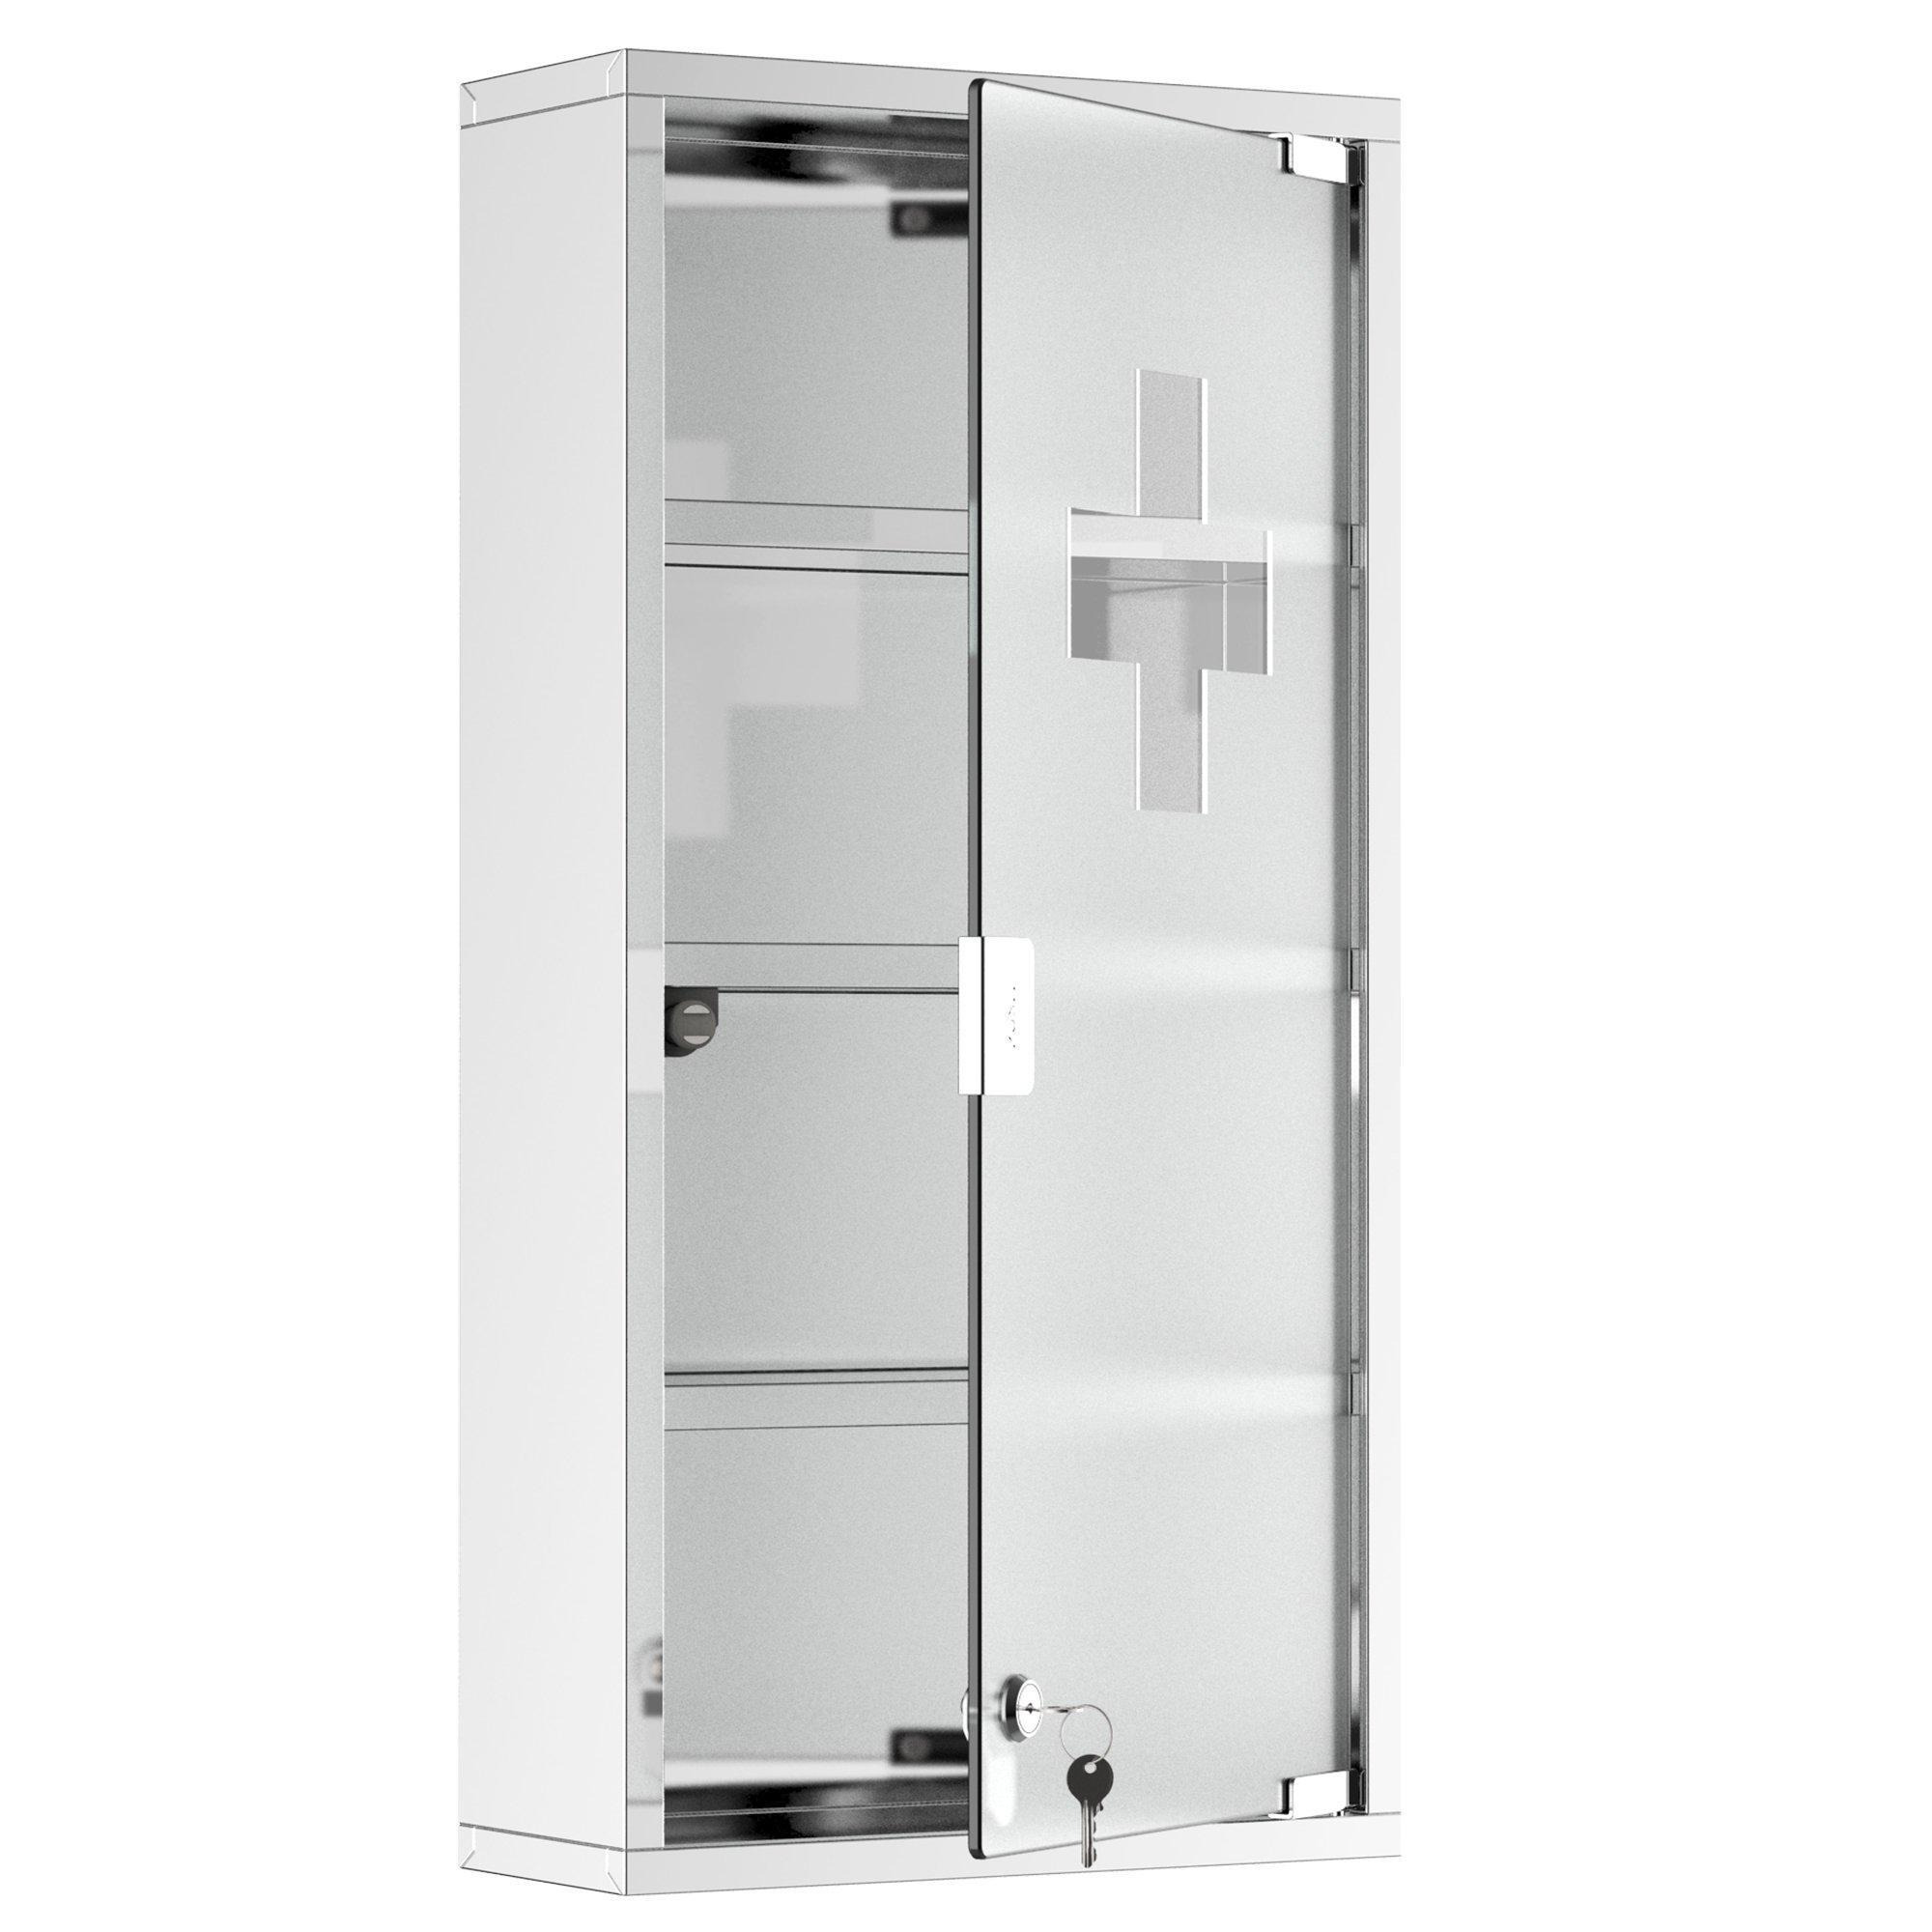 Stainless Steel Medicine Cabinet Furniture Glass Door Lockable - image 1